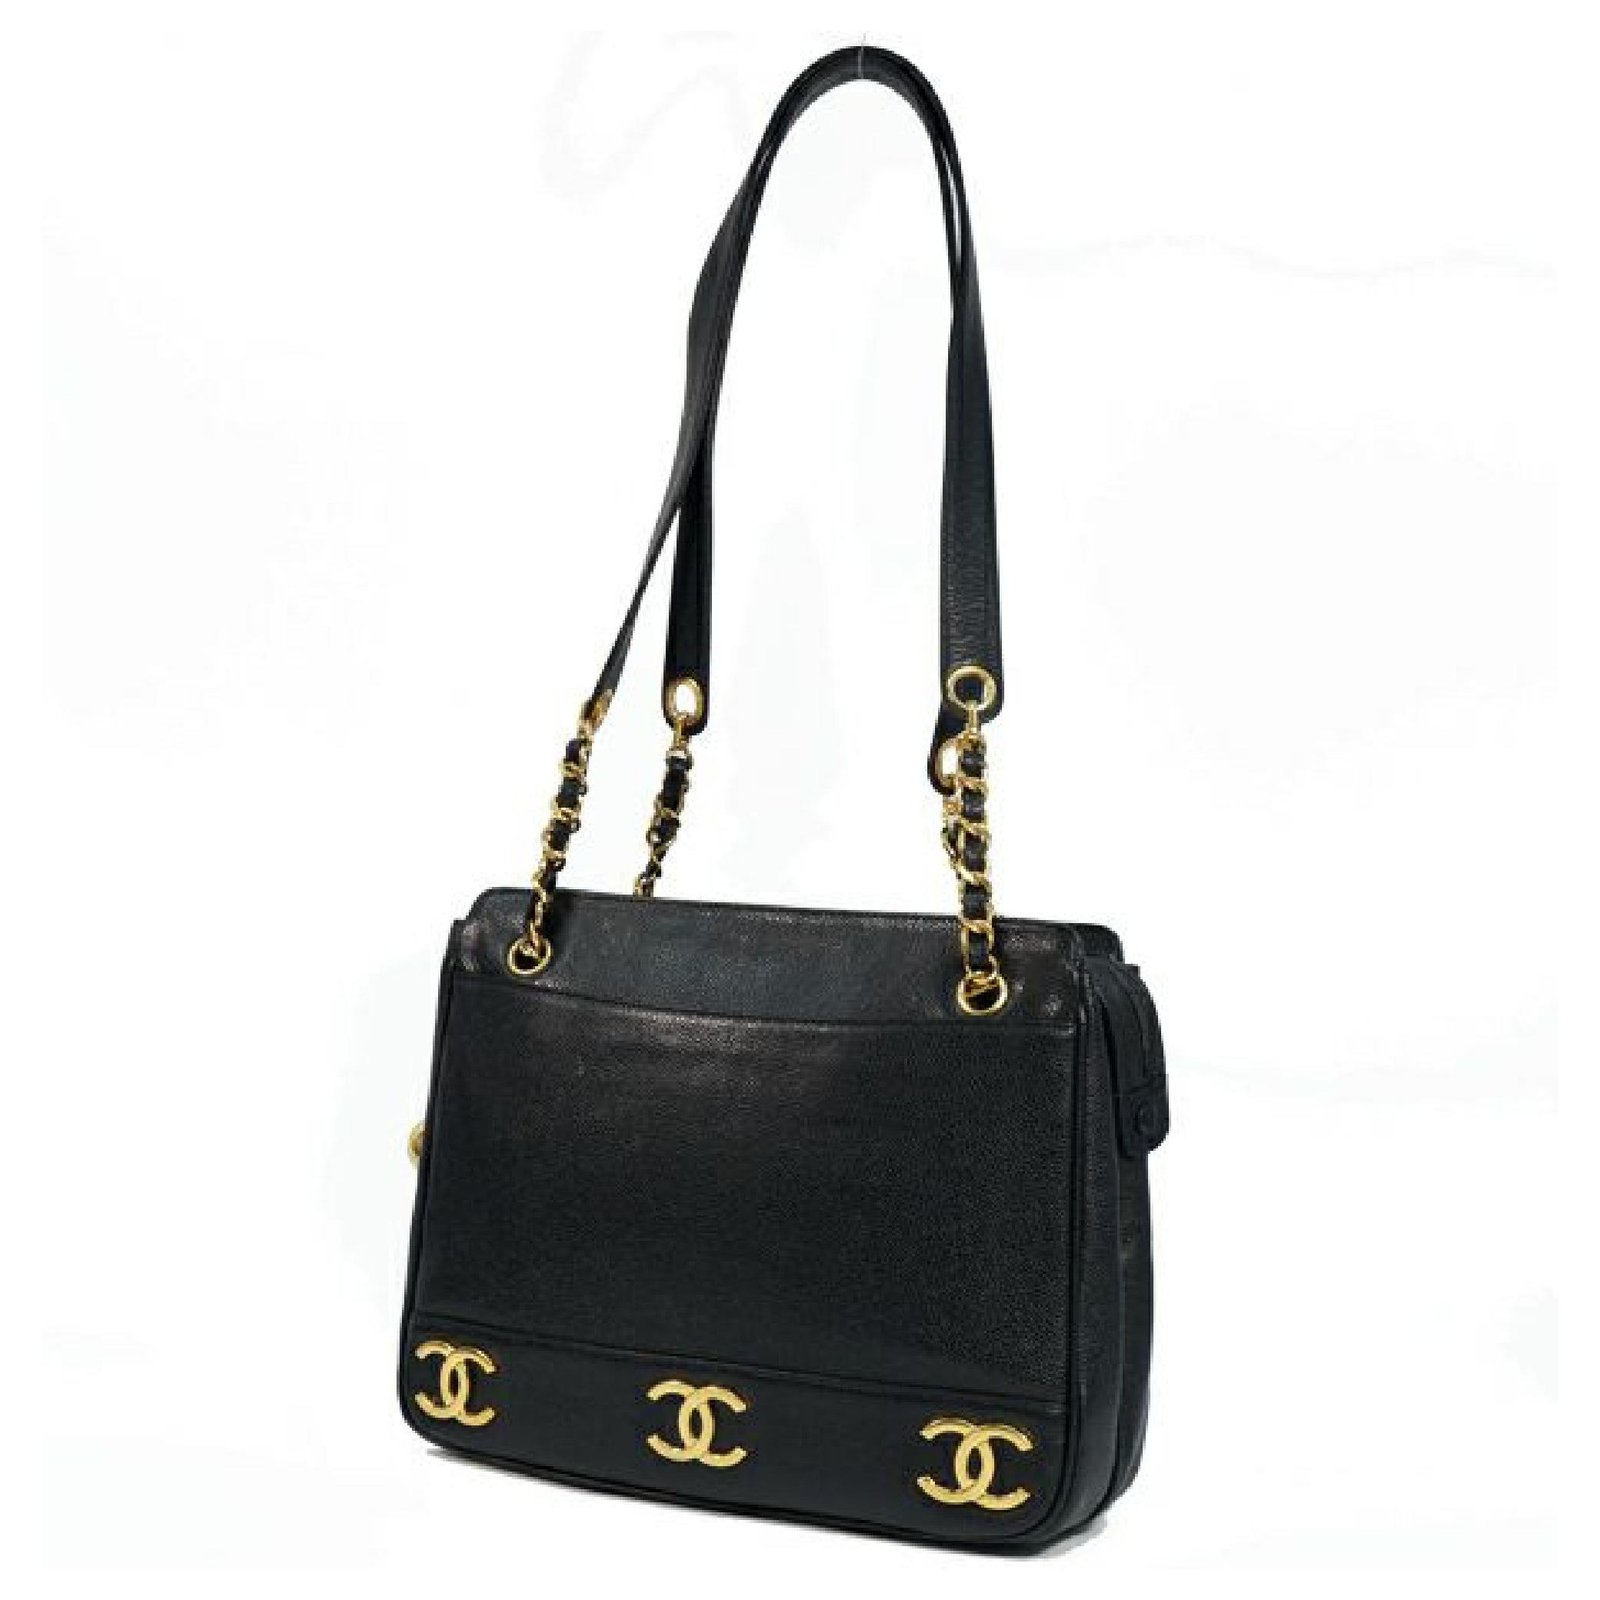 CHANEL chain tote triple coco Womens tote bag black x gold